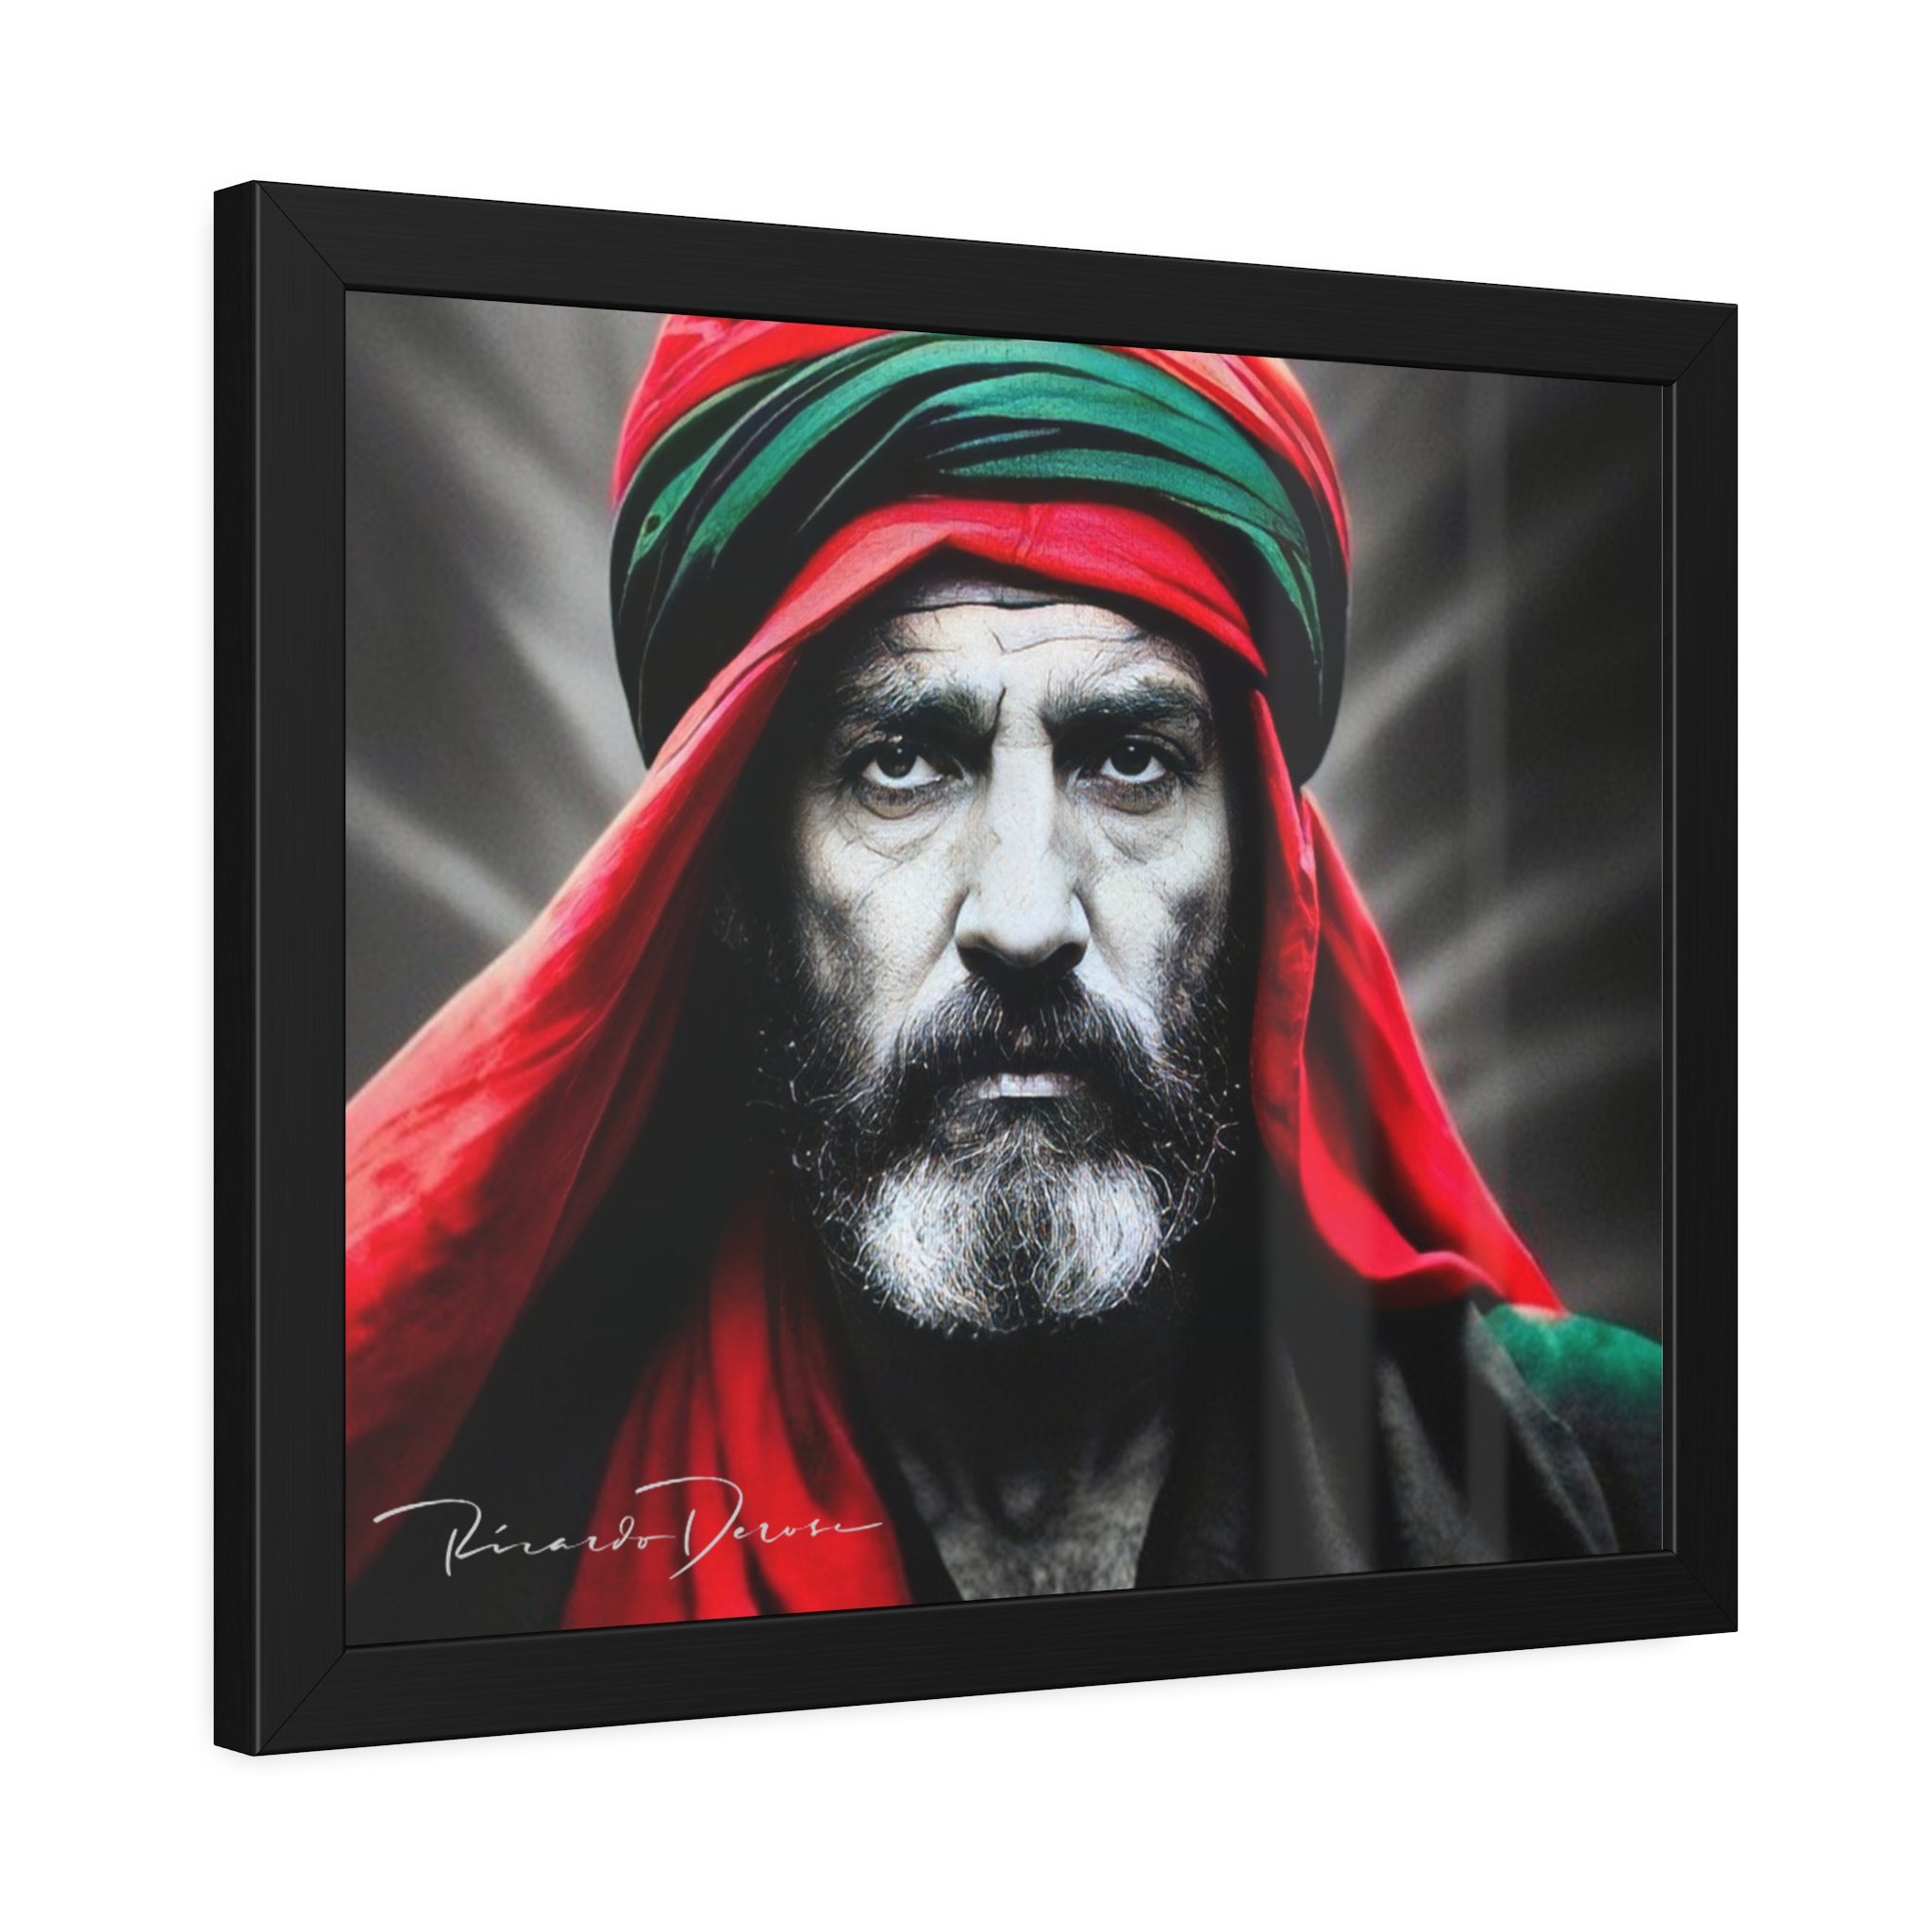 Palestine Old Man Framed Poster